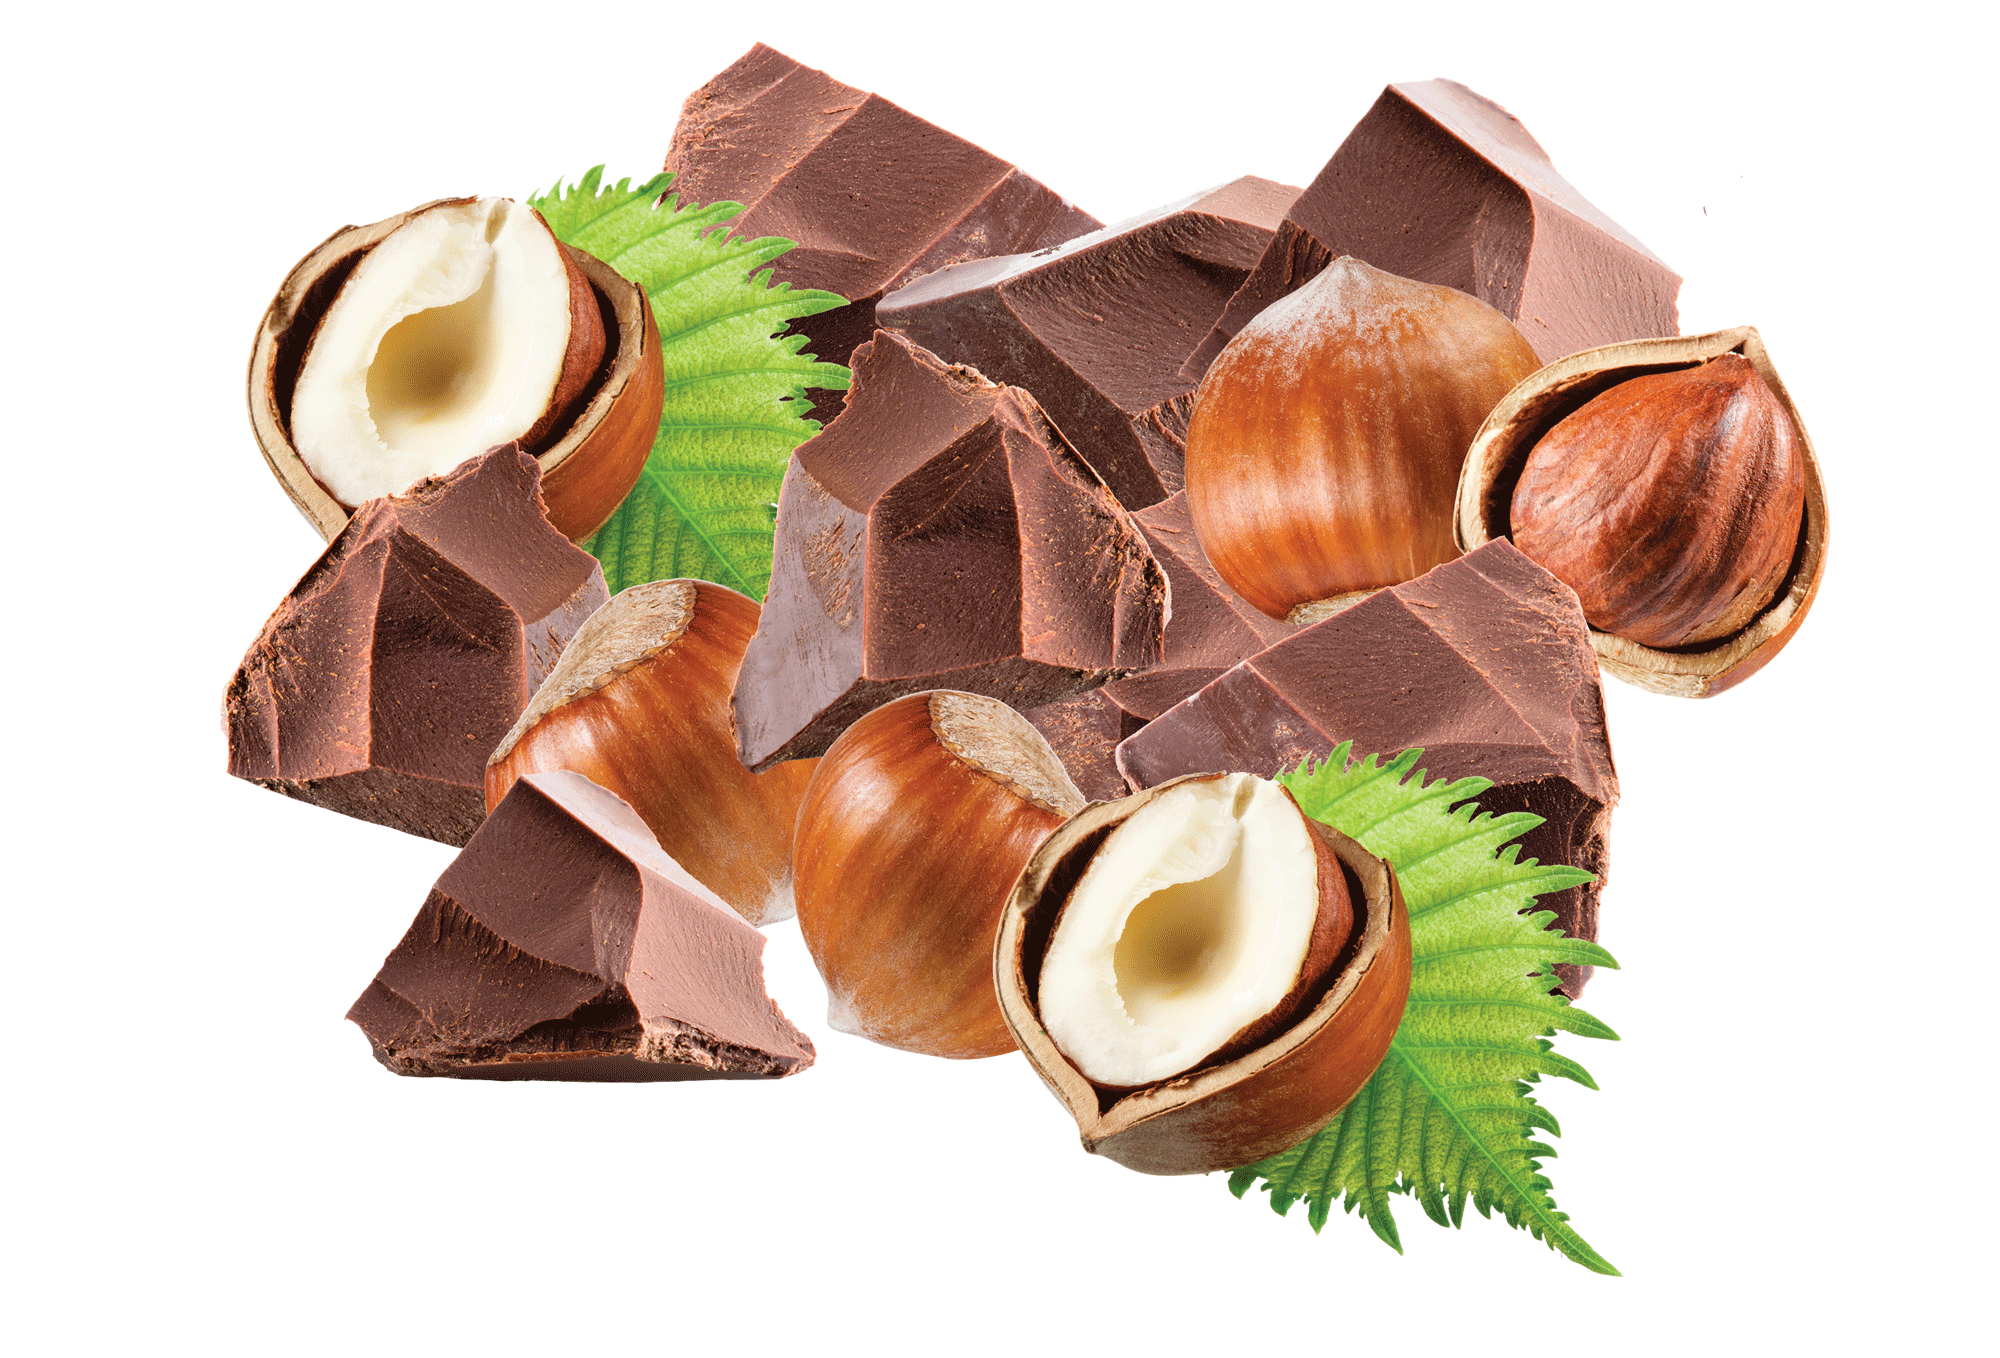 hazelnut and cocoa spread